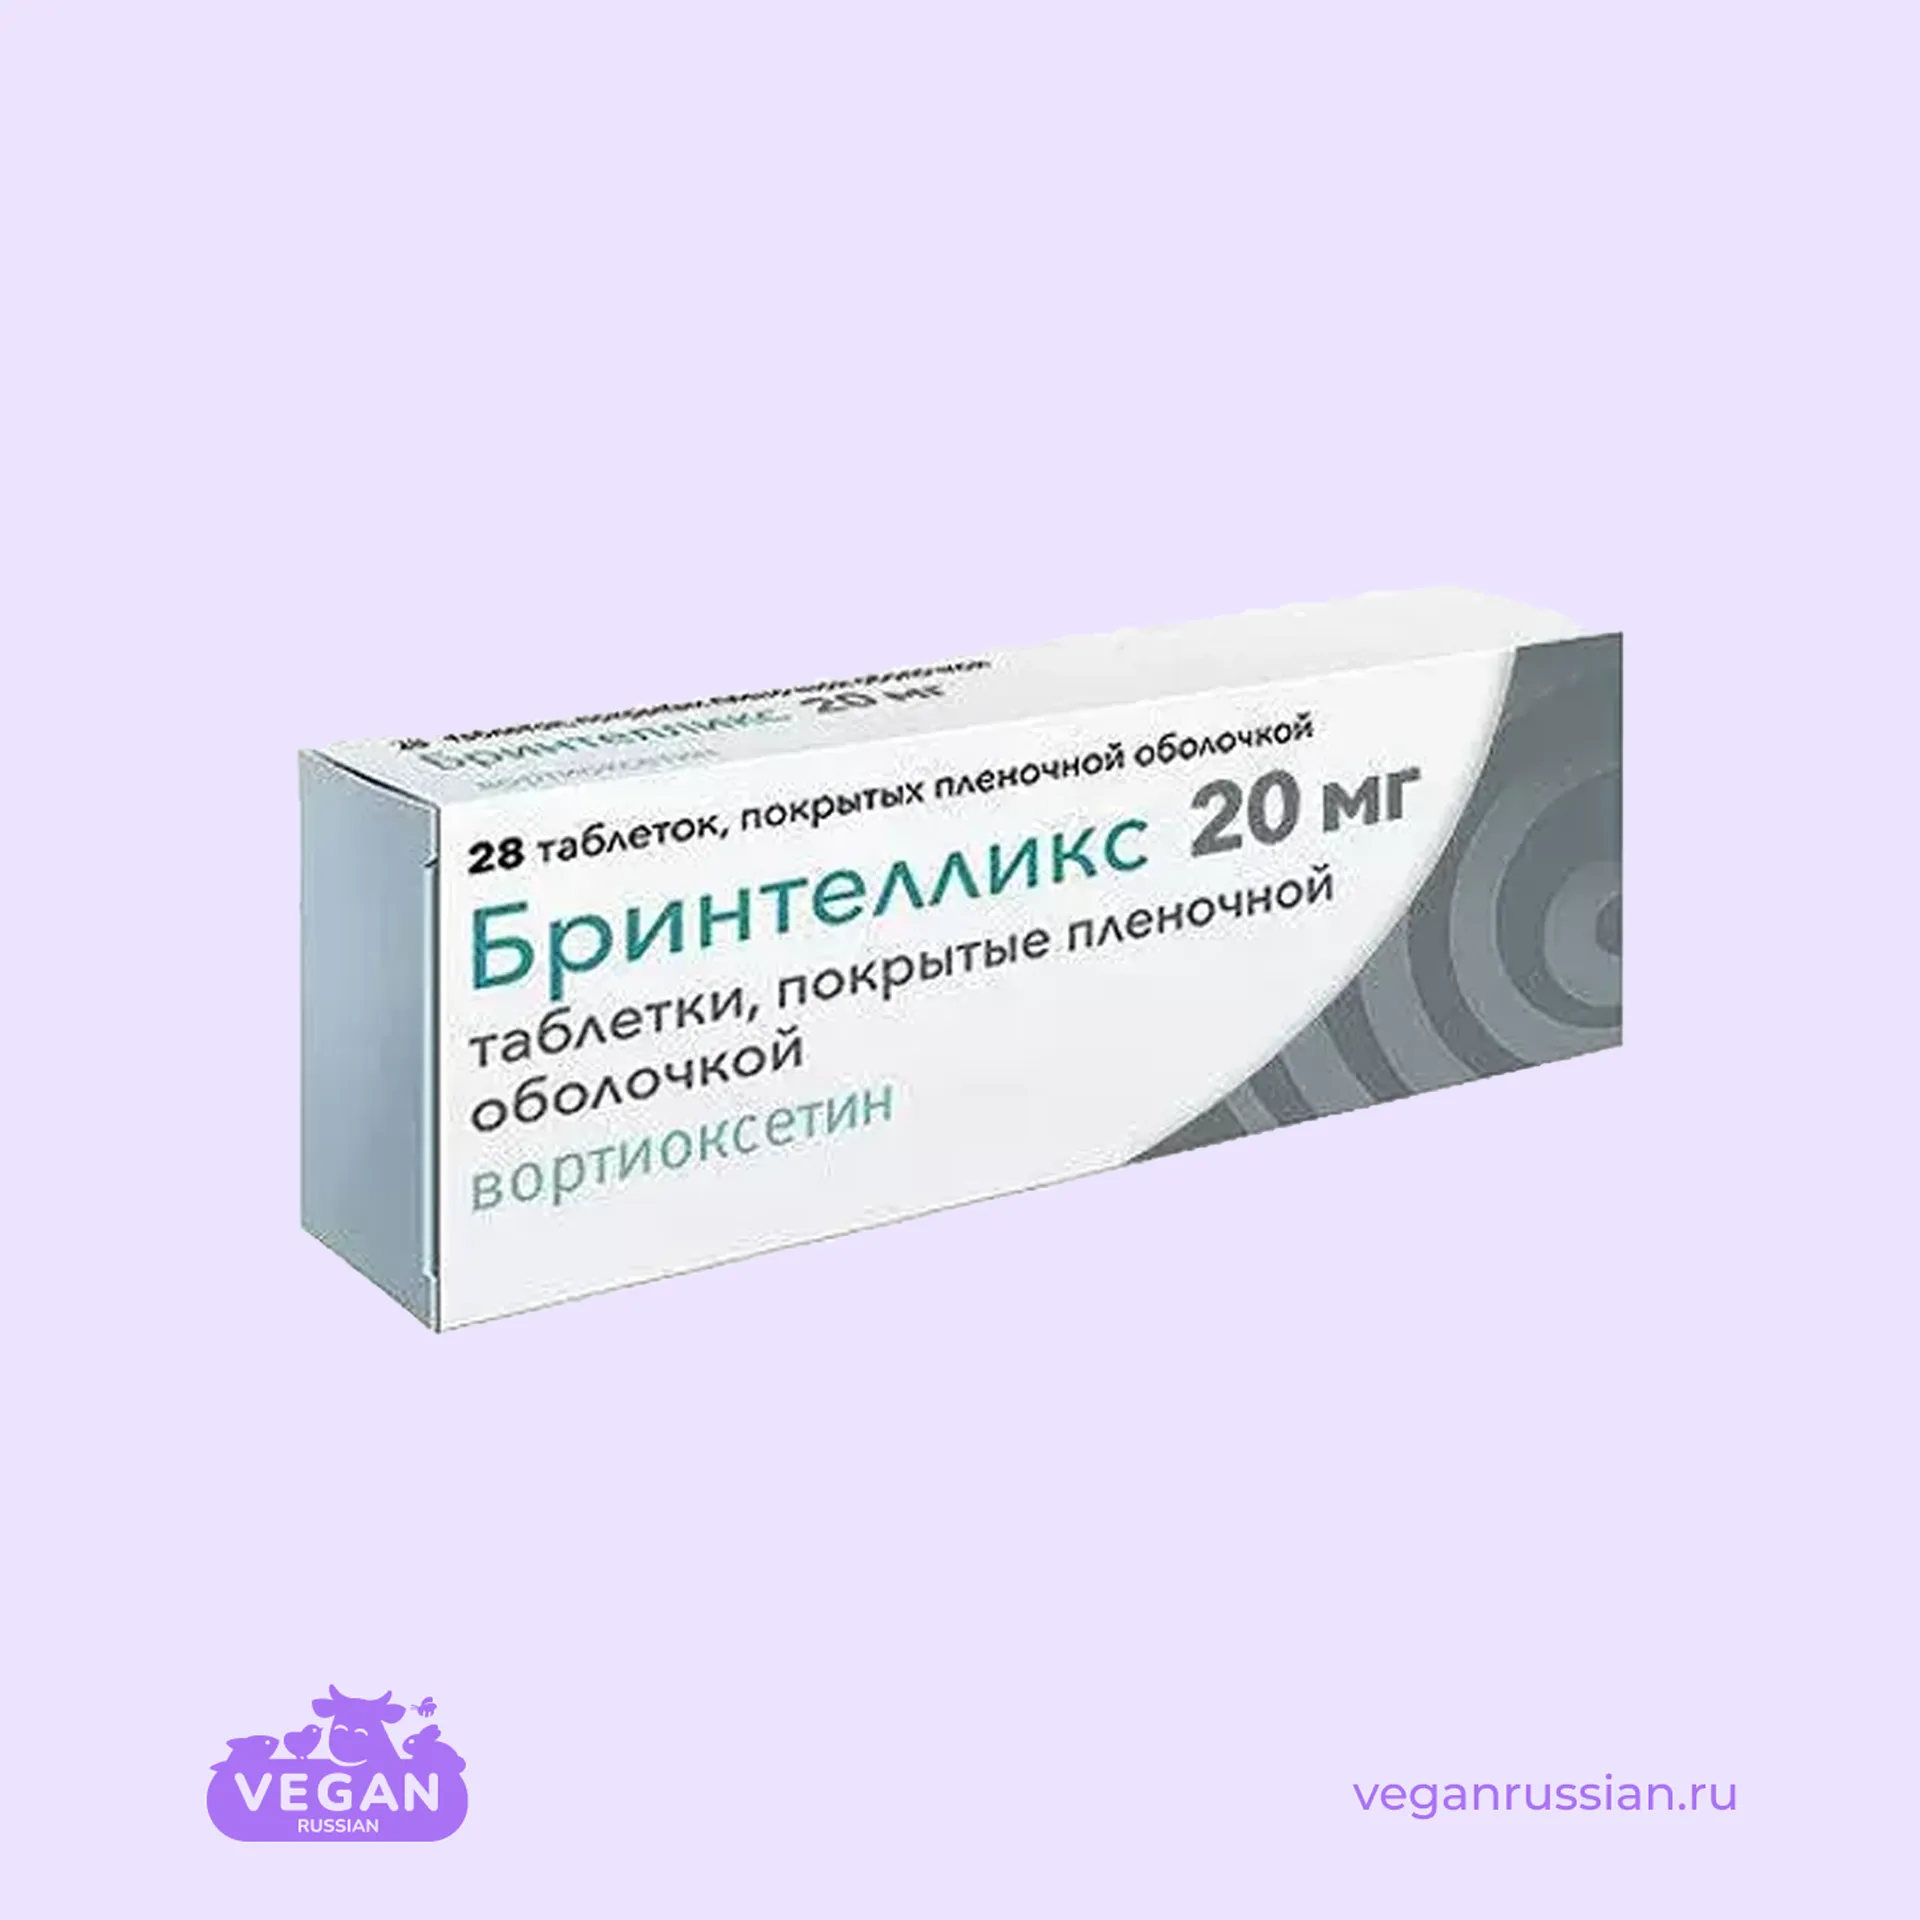 Бринтелликс Вортиоксетин Лундбек 28 шт 5-20 мг